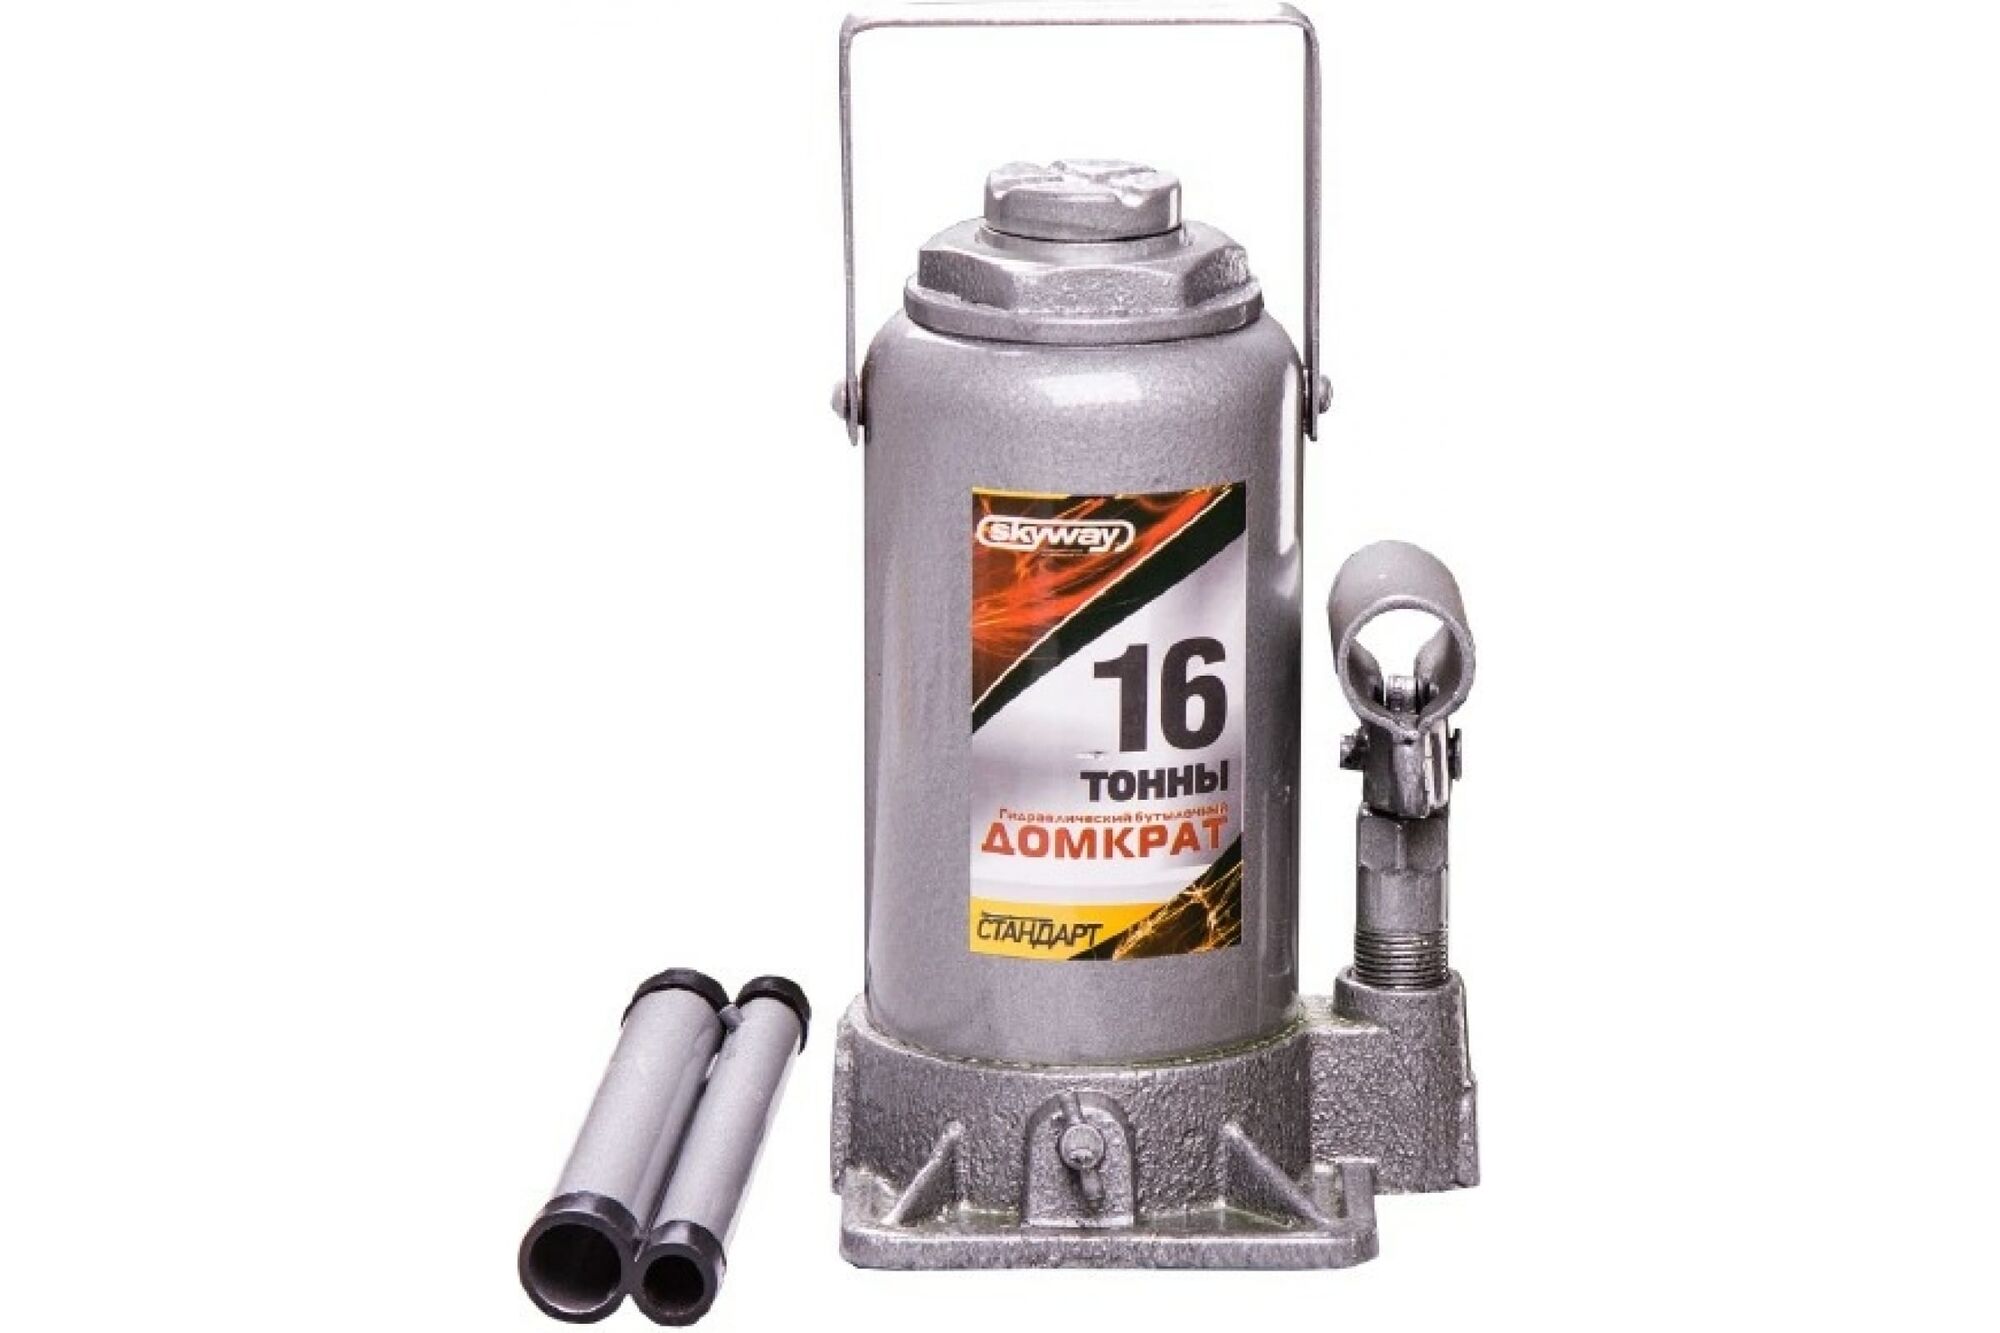 Гидравлический бутылочный домкрат SKYWAY 16 т h 210-395 мм STANDART S01804029